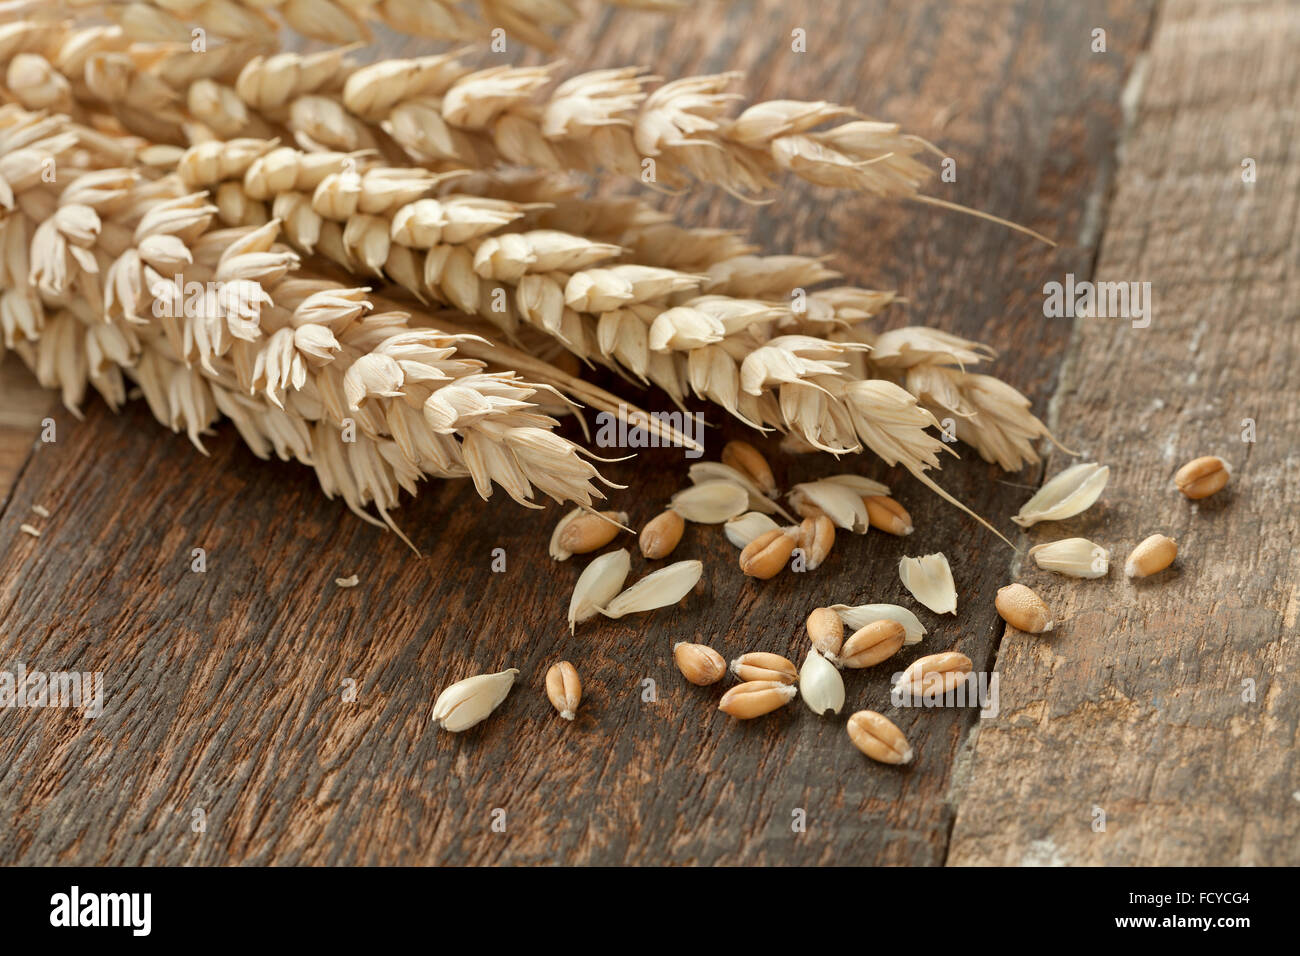 Espigas de trigo, trigo seco. foto de Stock, espigas de trigo secas